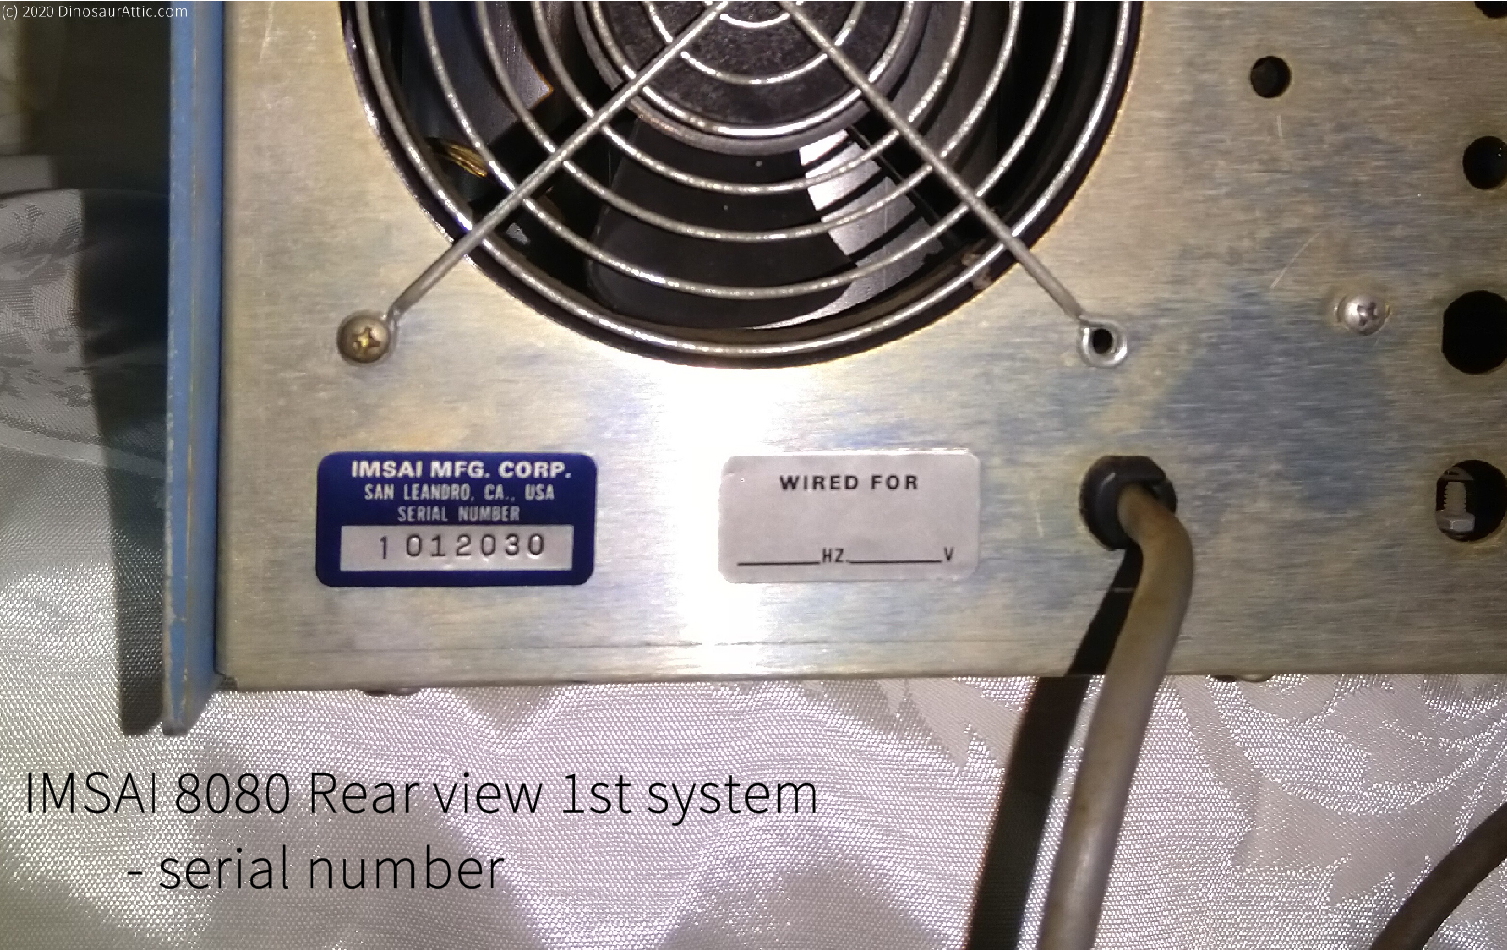 <b>IMSAI 8080 Rear view 1st system - serial number</b>